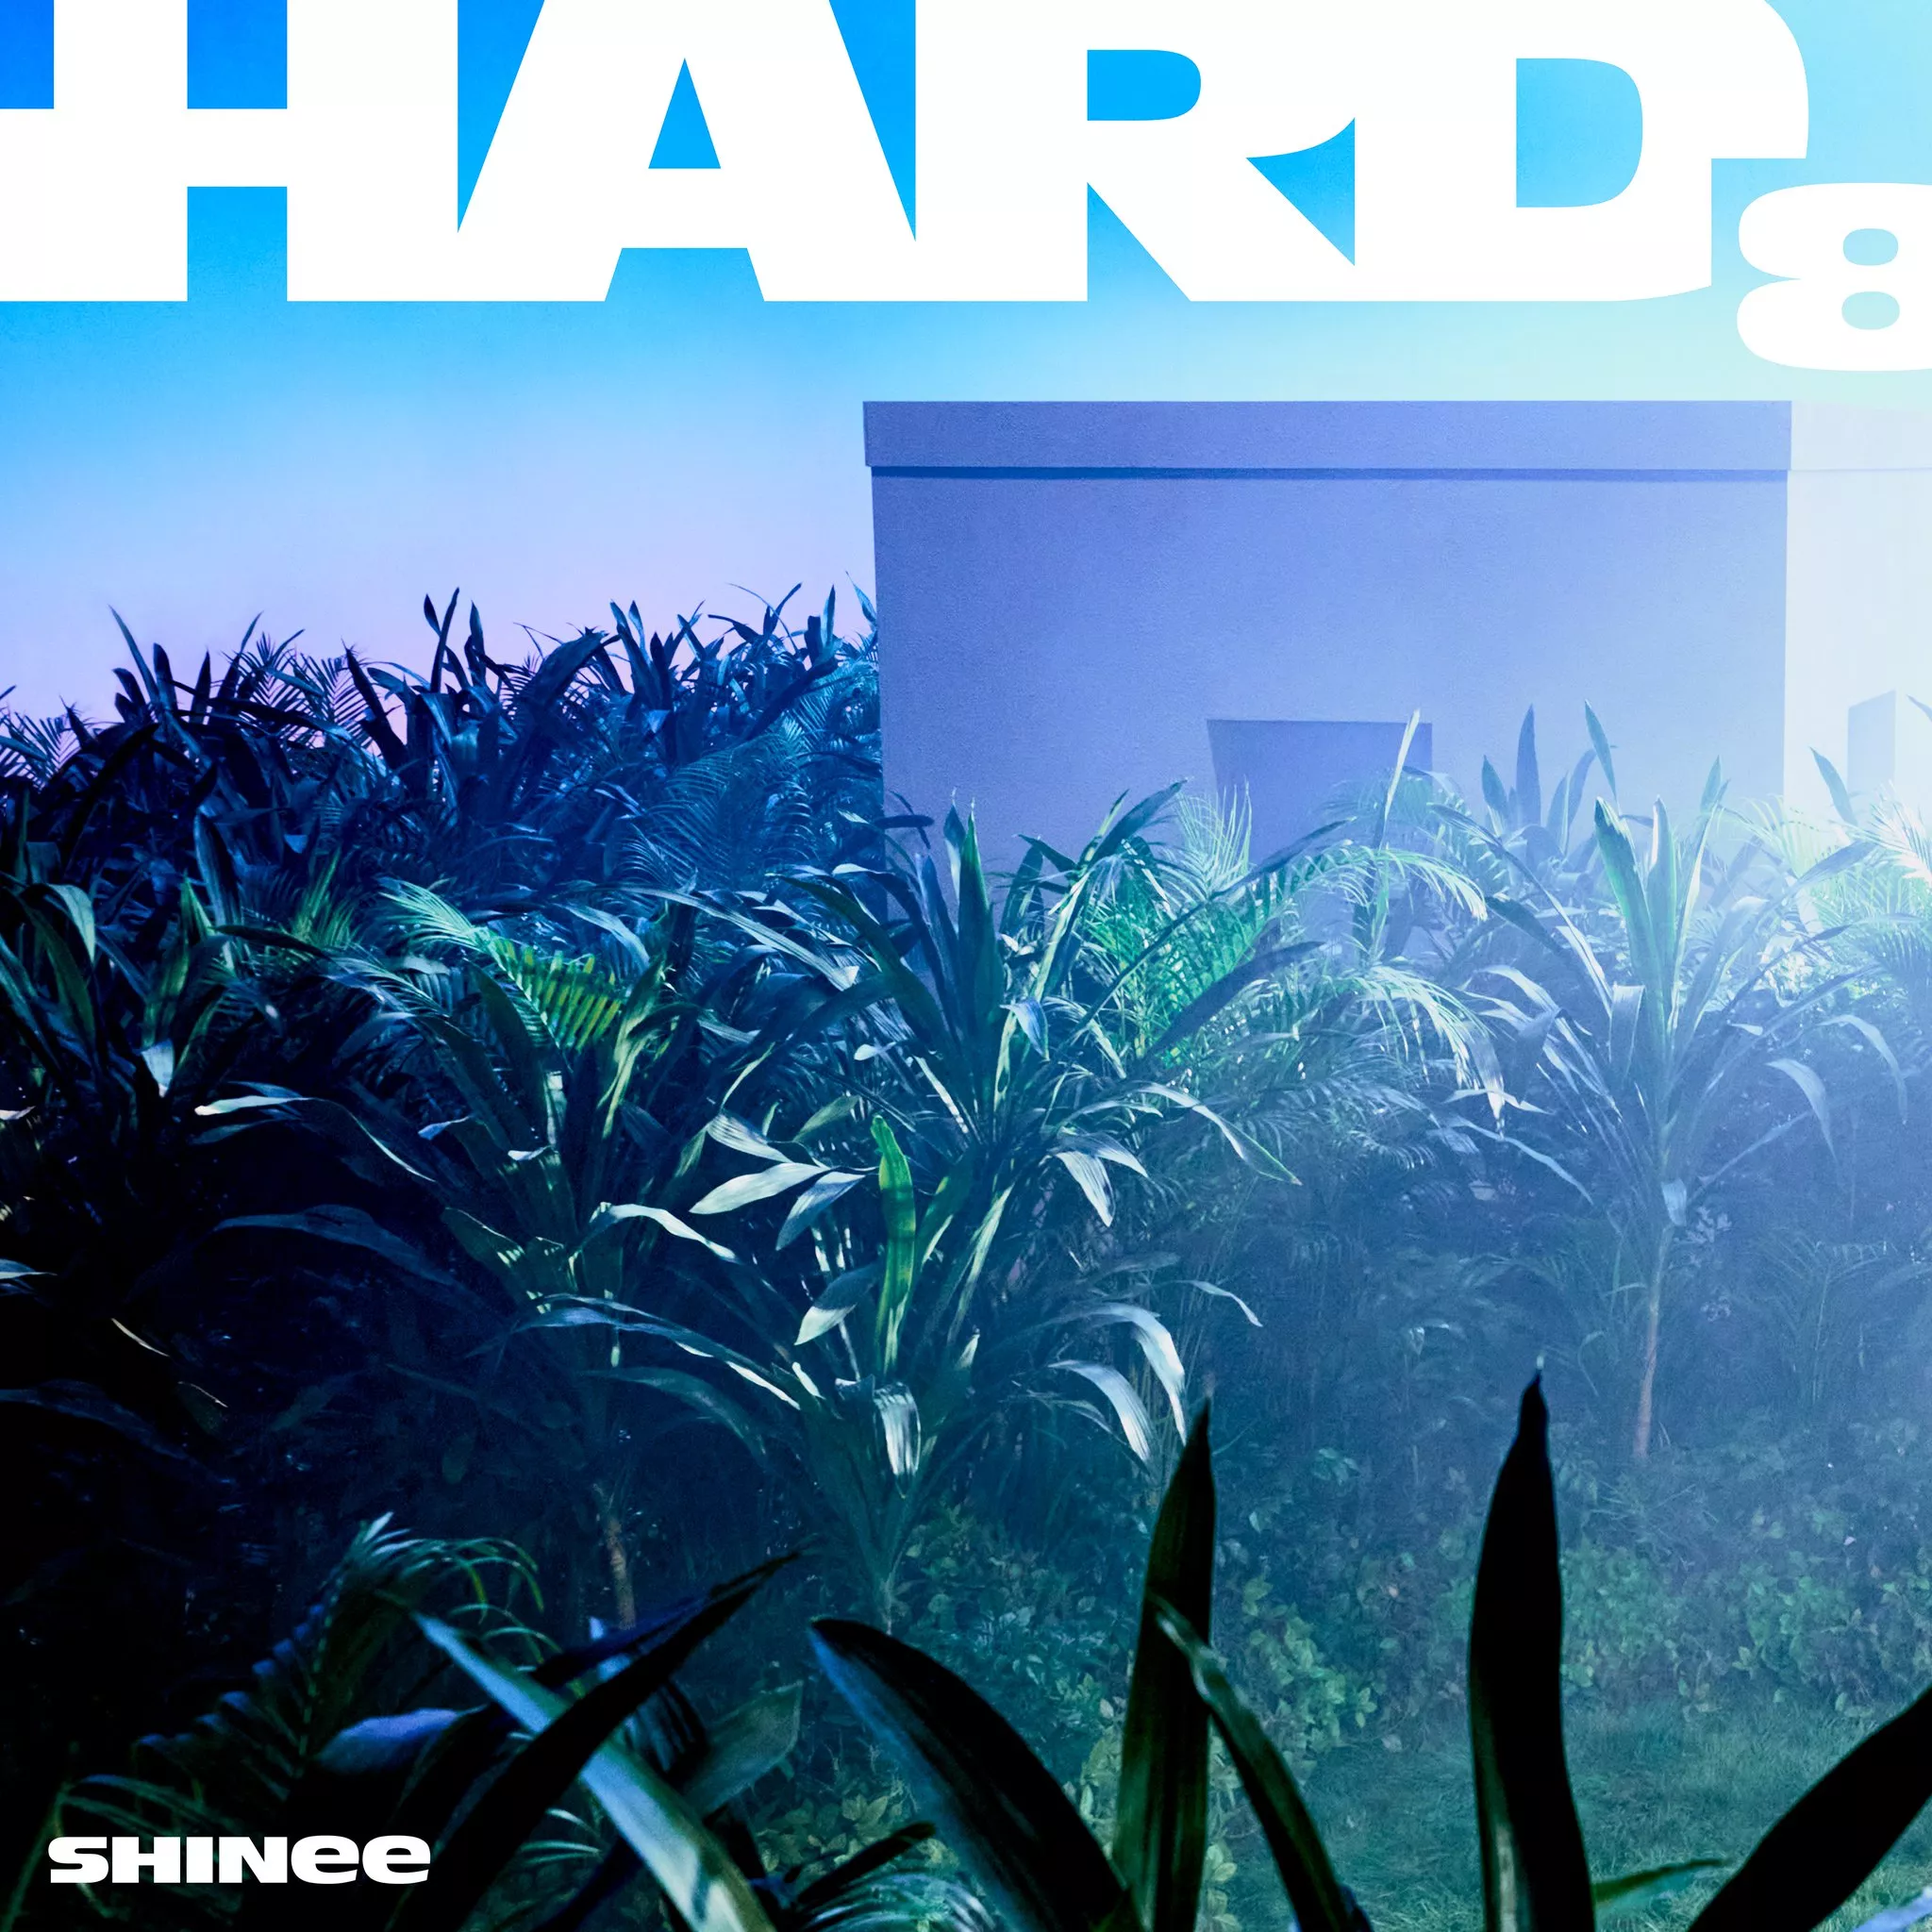 SHINee объявили дату камбэка в июне и выпустили первый тизер для альбома "HARD"